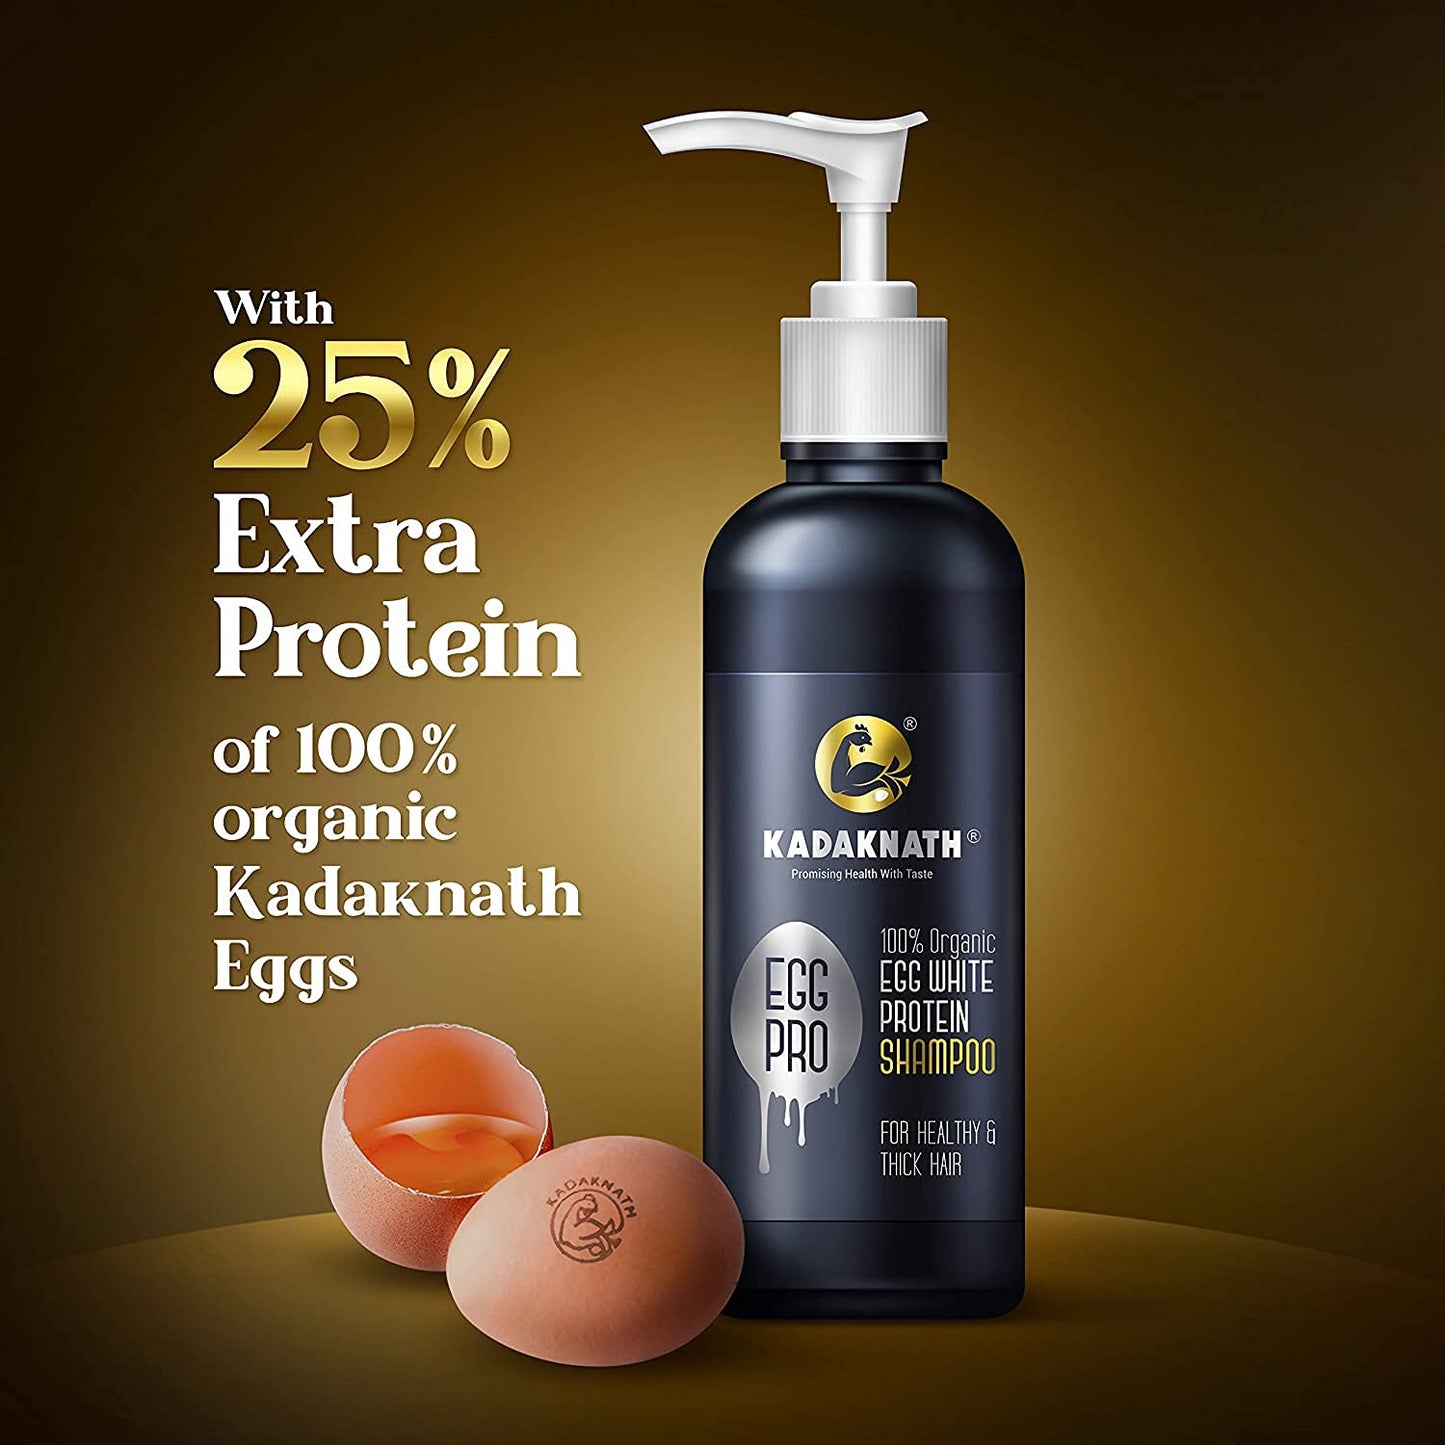 Kadaknath Egg White Protein Shampoo Egg Pro 150 ml